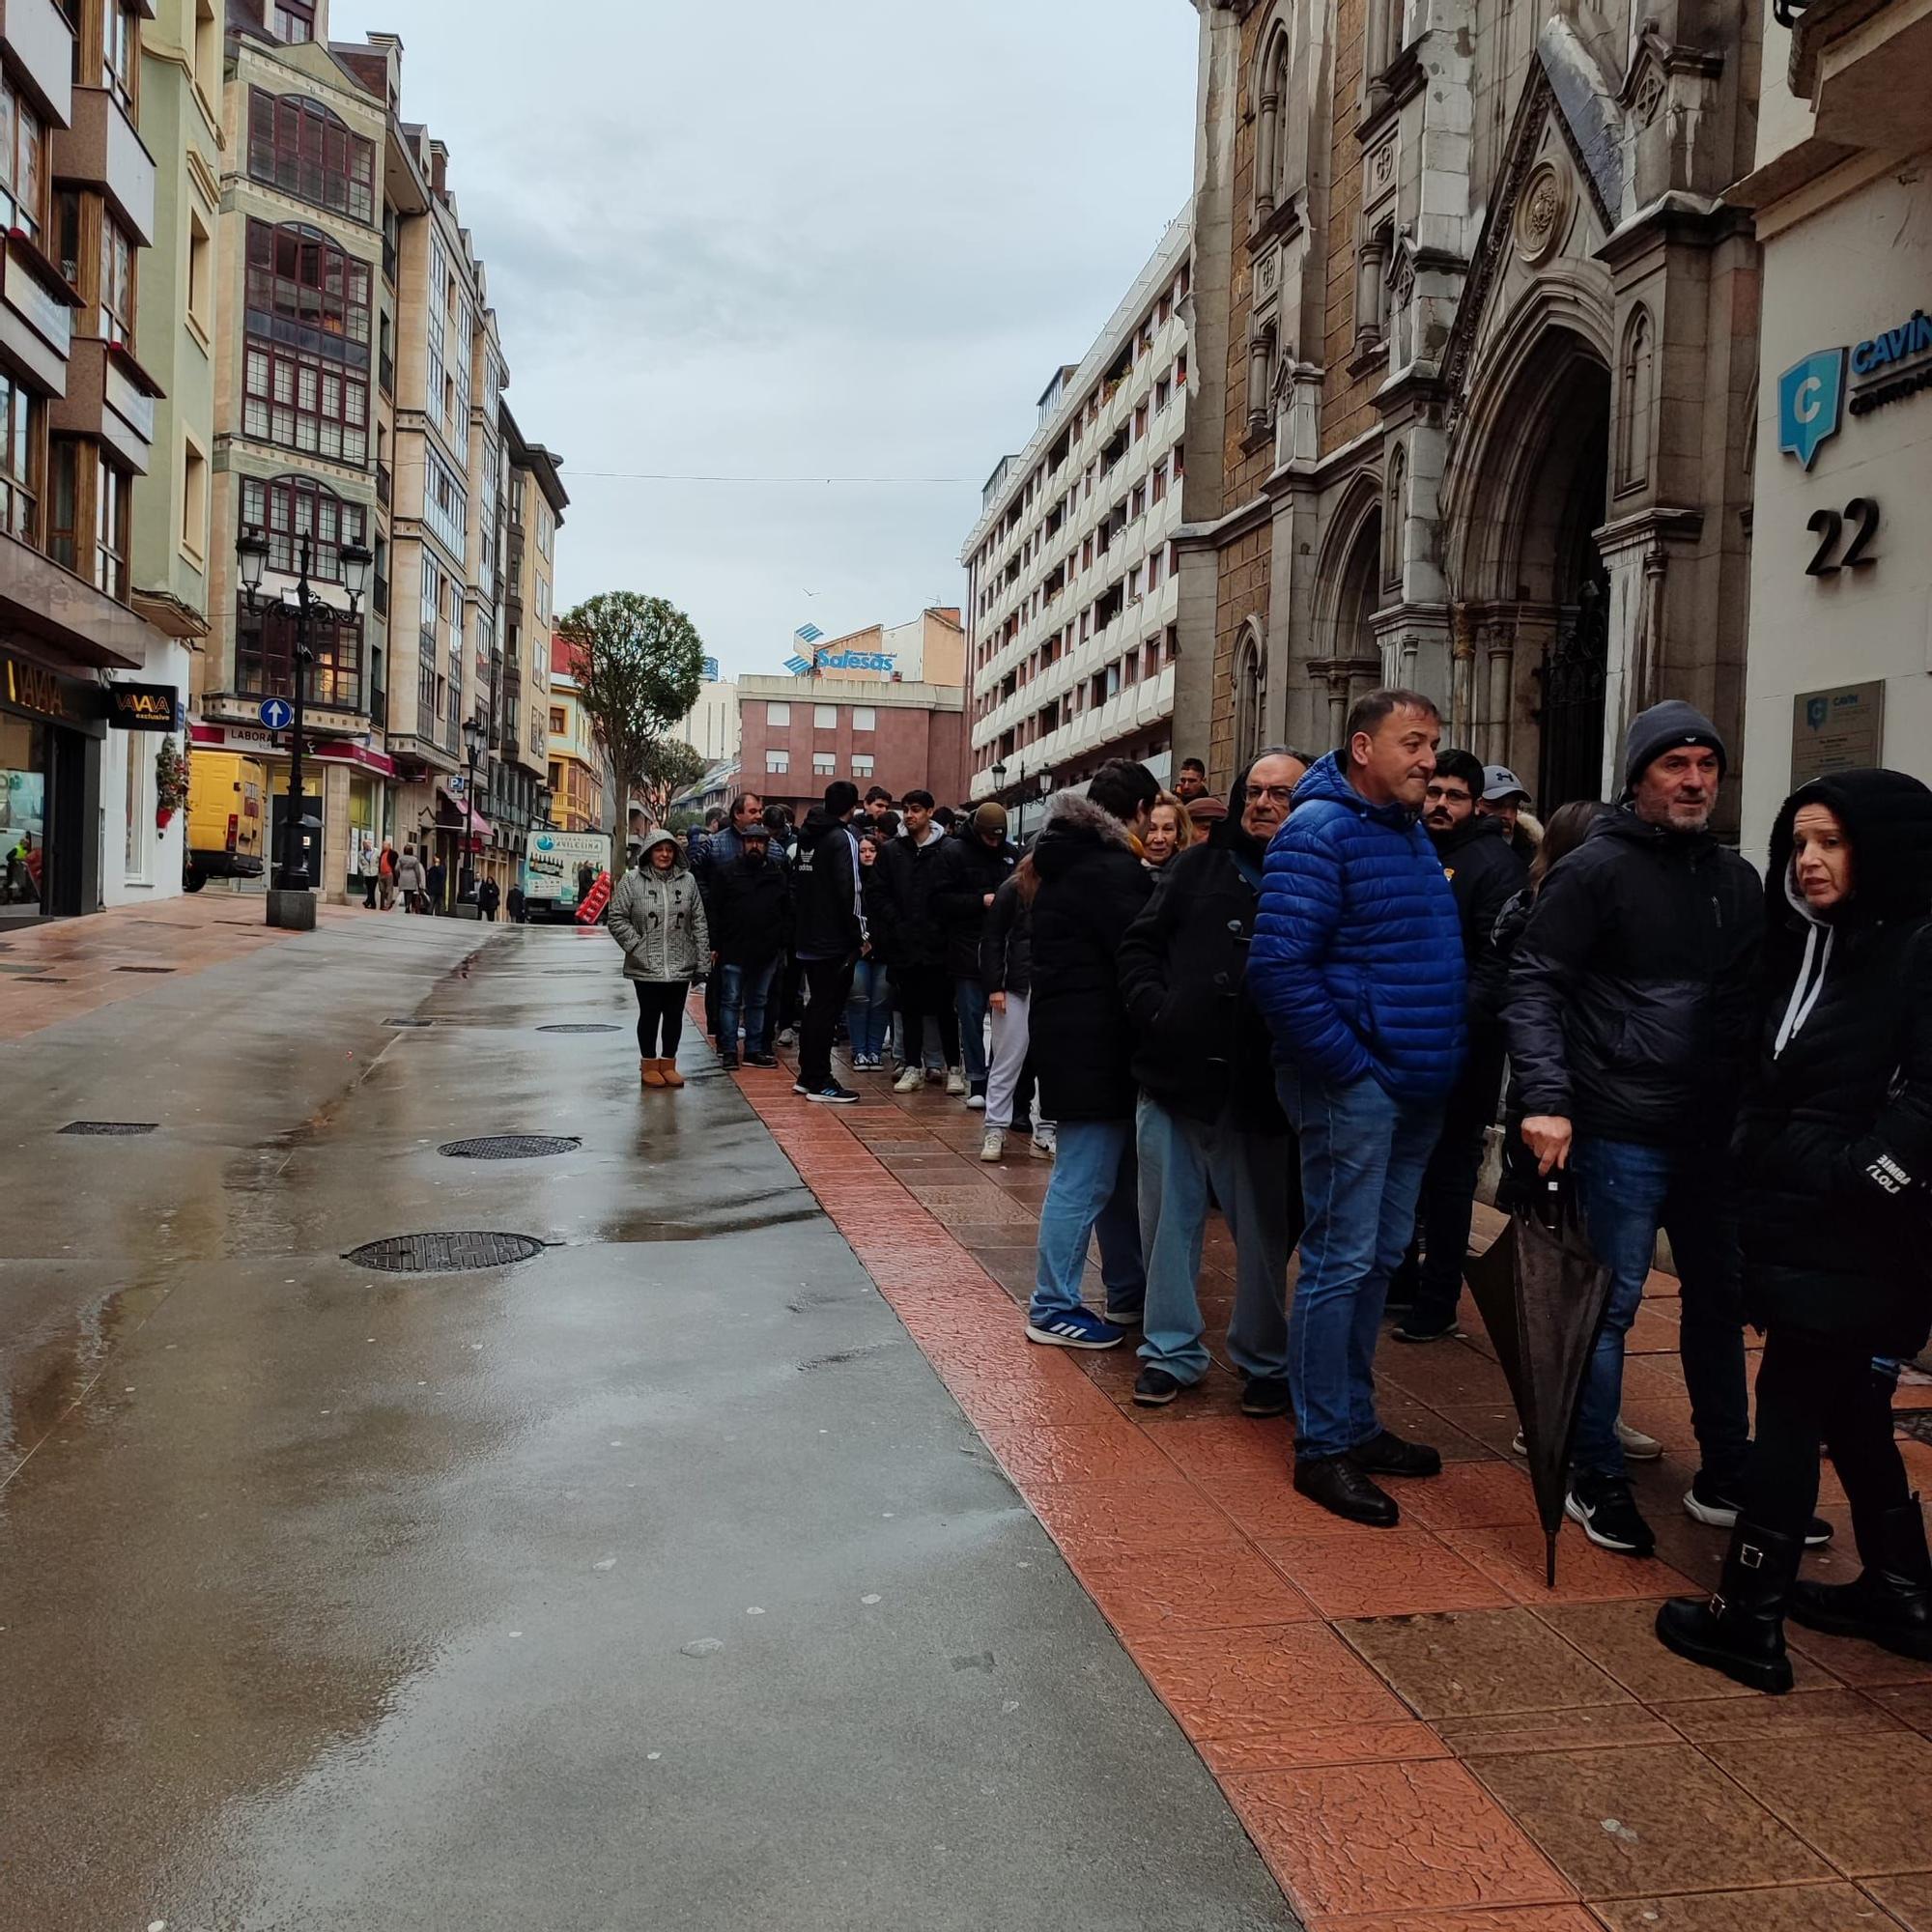 En imágenes: Largas colas desde las cuatro de la madrugada en en Caveda para conseguir una entrada a Ferrol